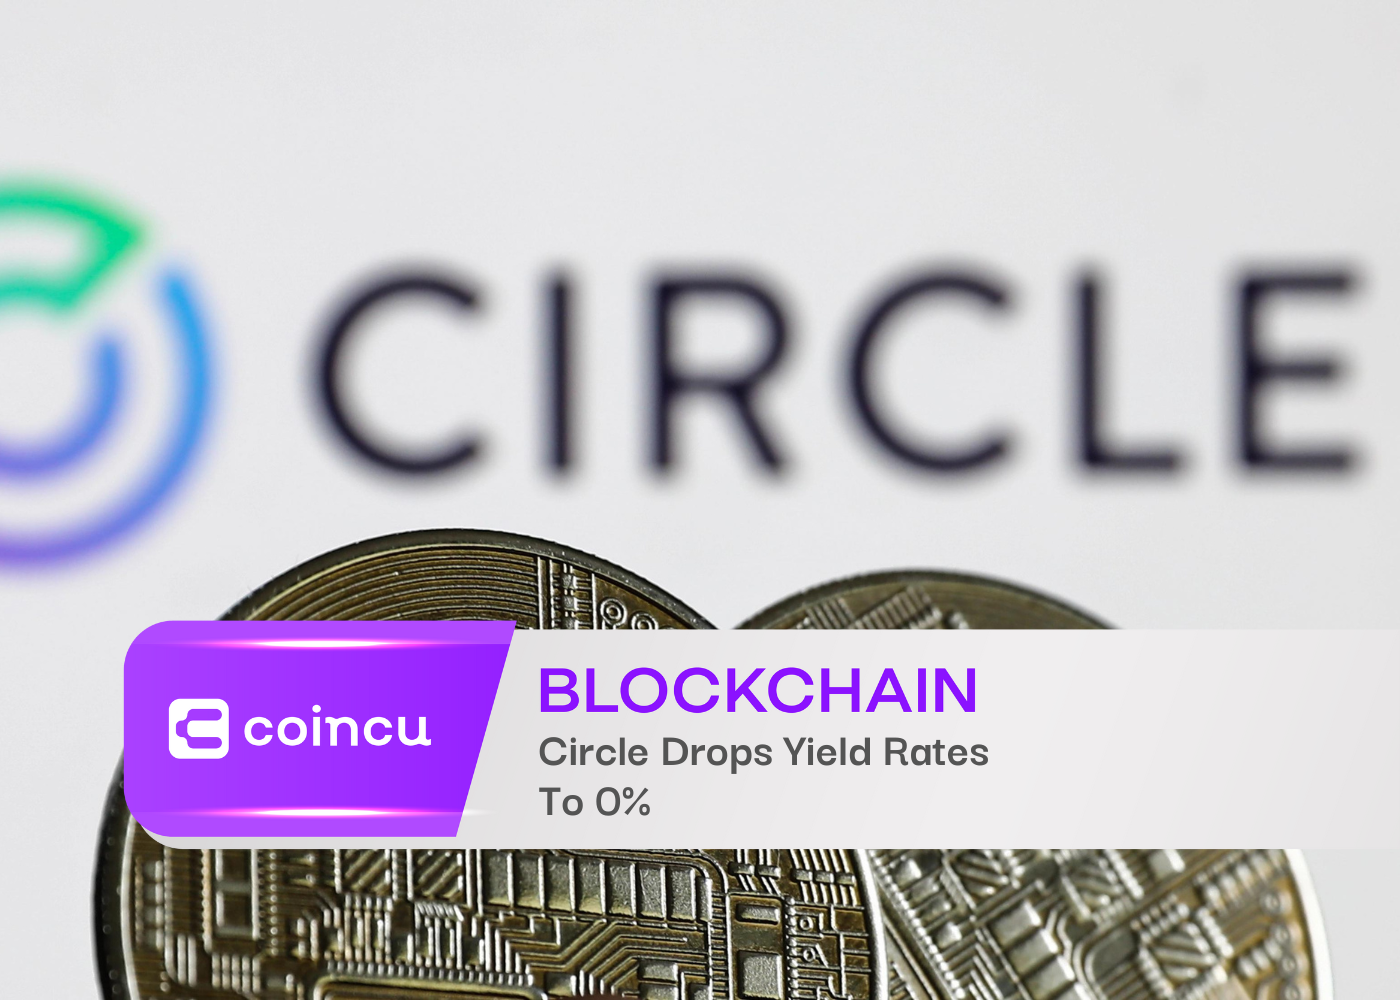 Circle Drops Yield Rates